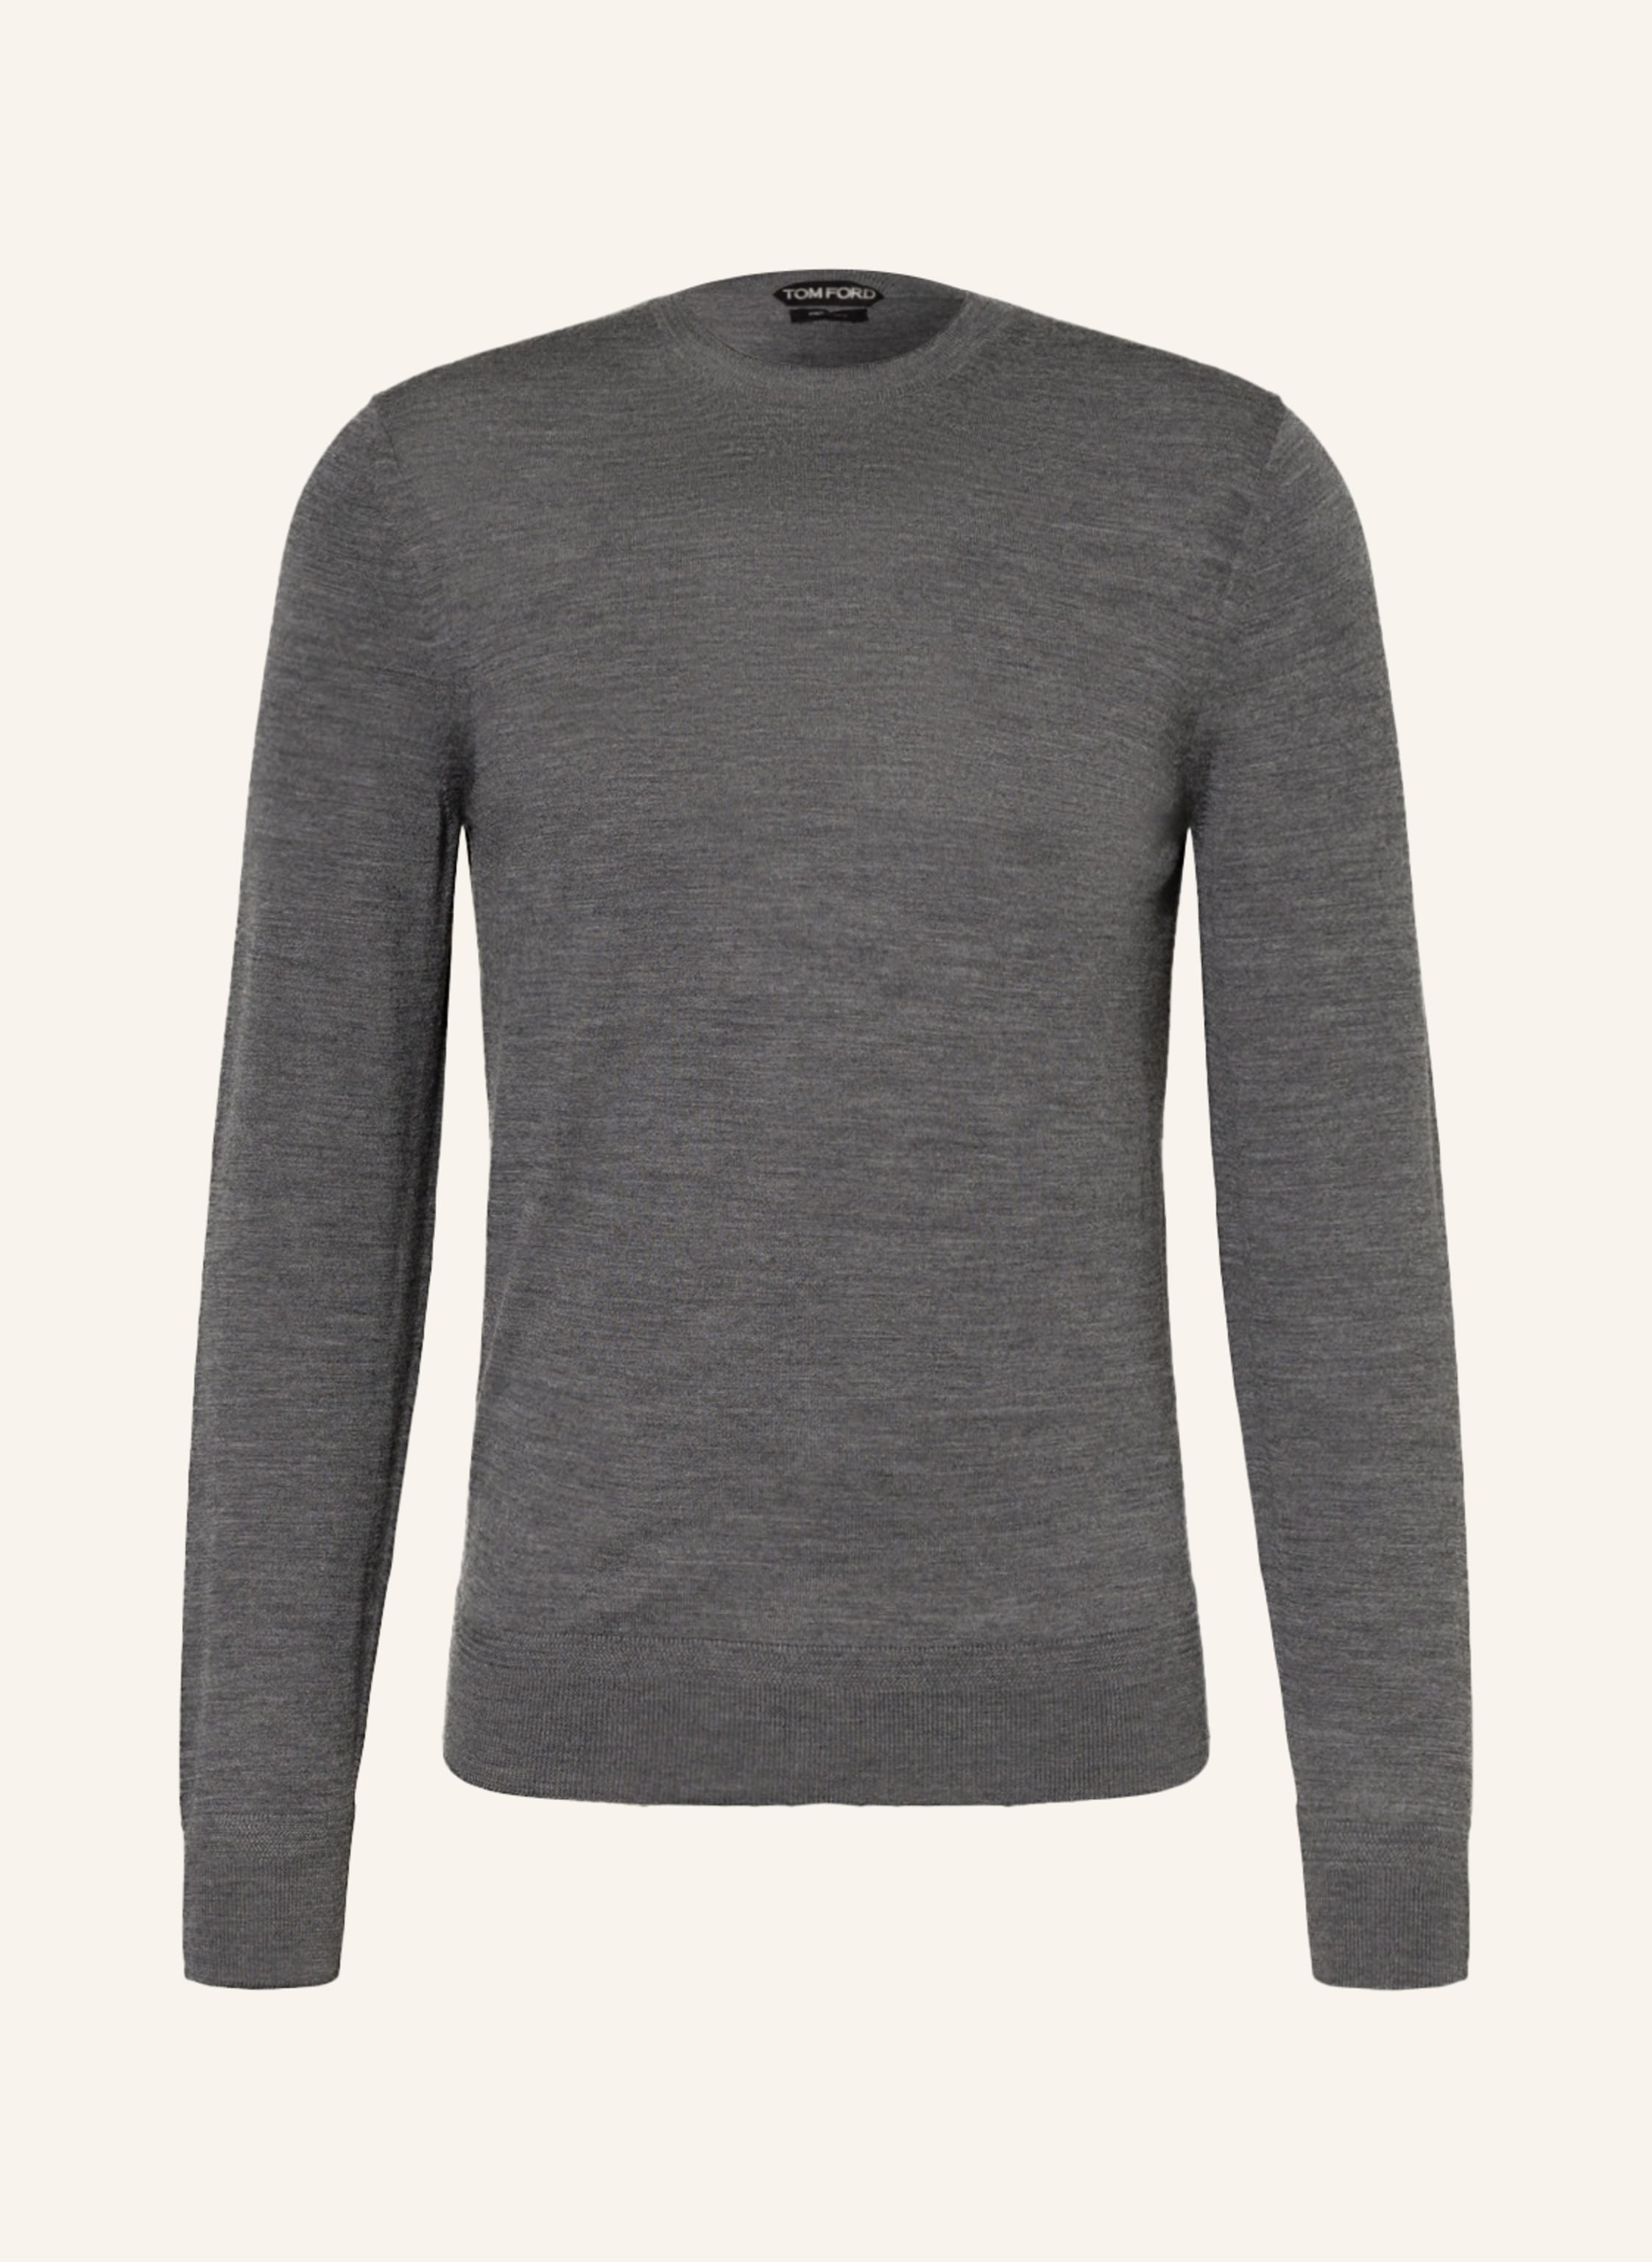 TOM FORD Sweater in gray | Breuninger